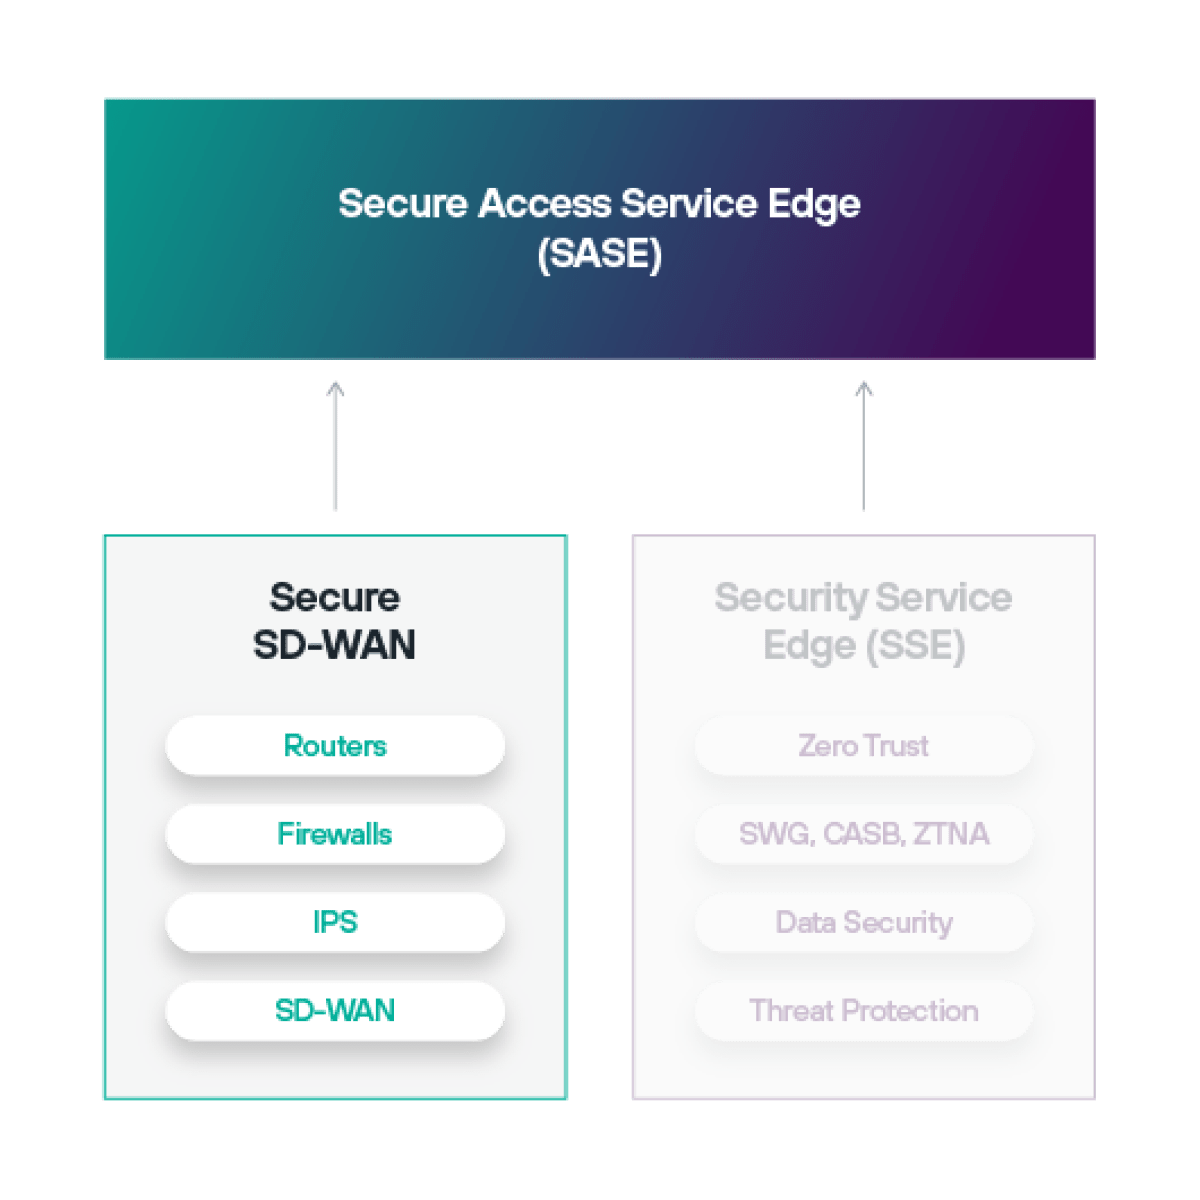 SD-WAN(소프트웨어 정의 광역 네트워킹)은 SASE(보안 액세스 서비스 에지) 아키텍처의 일부입니다.